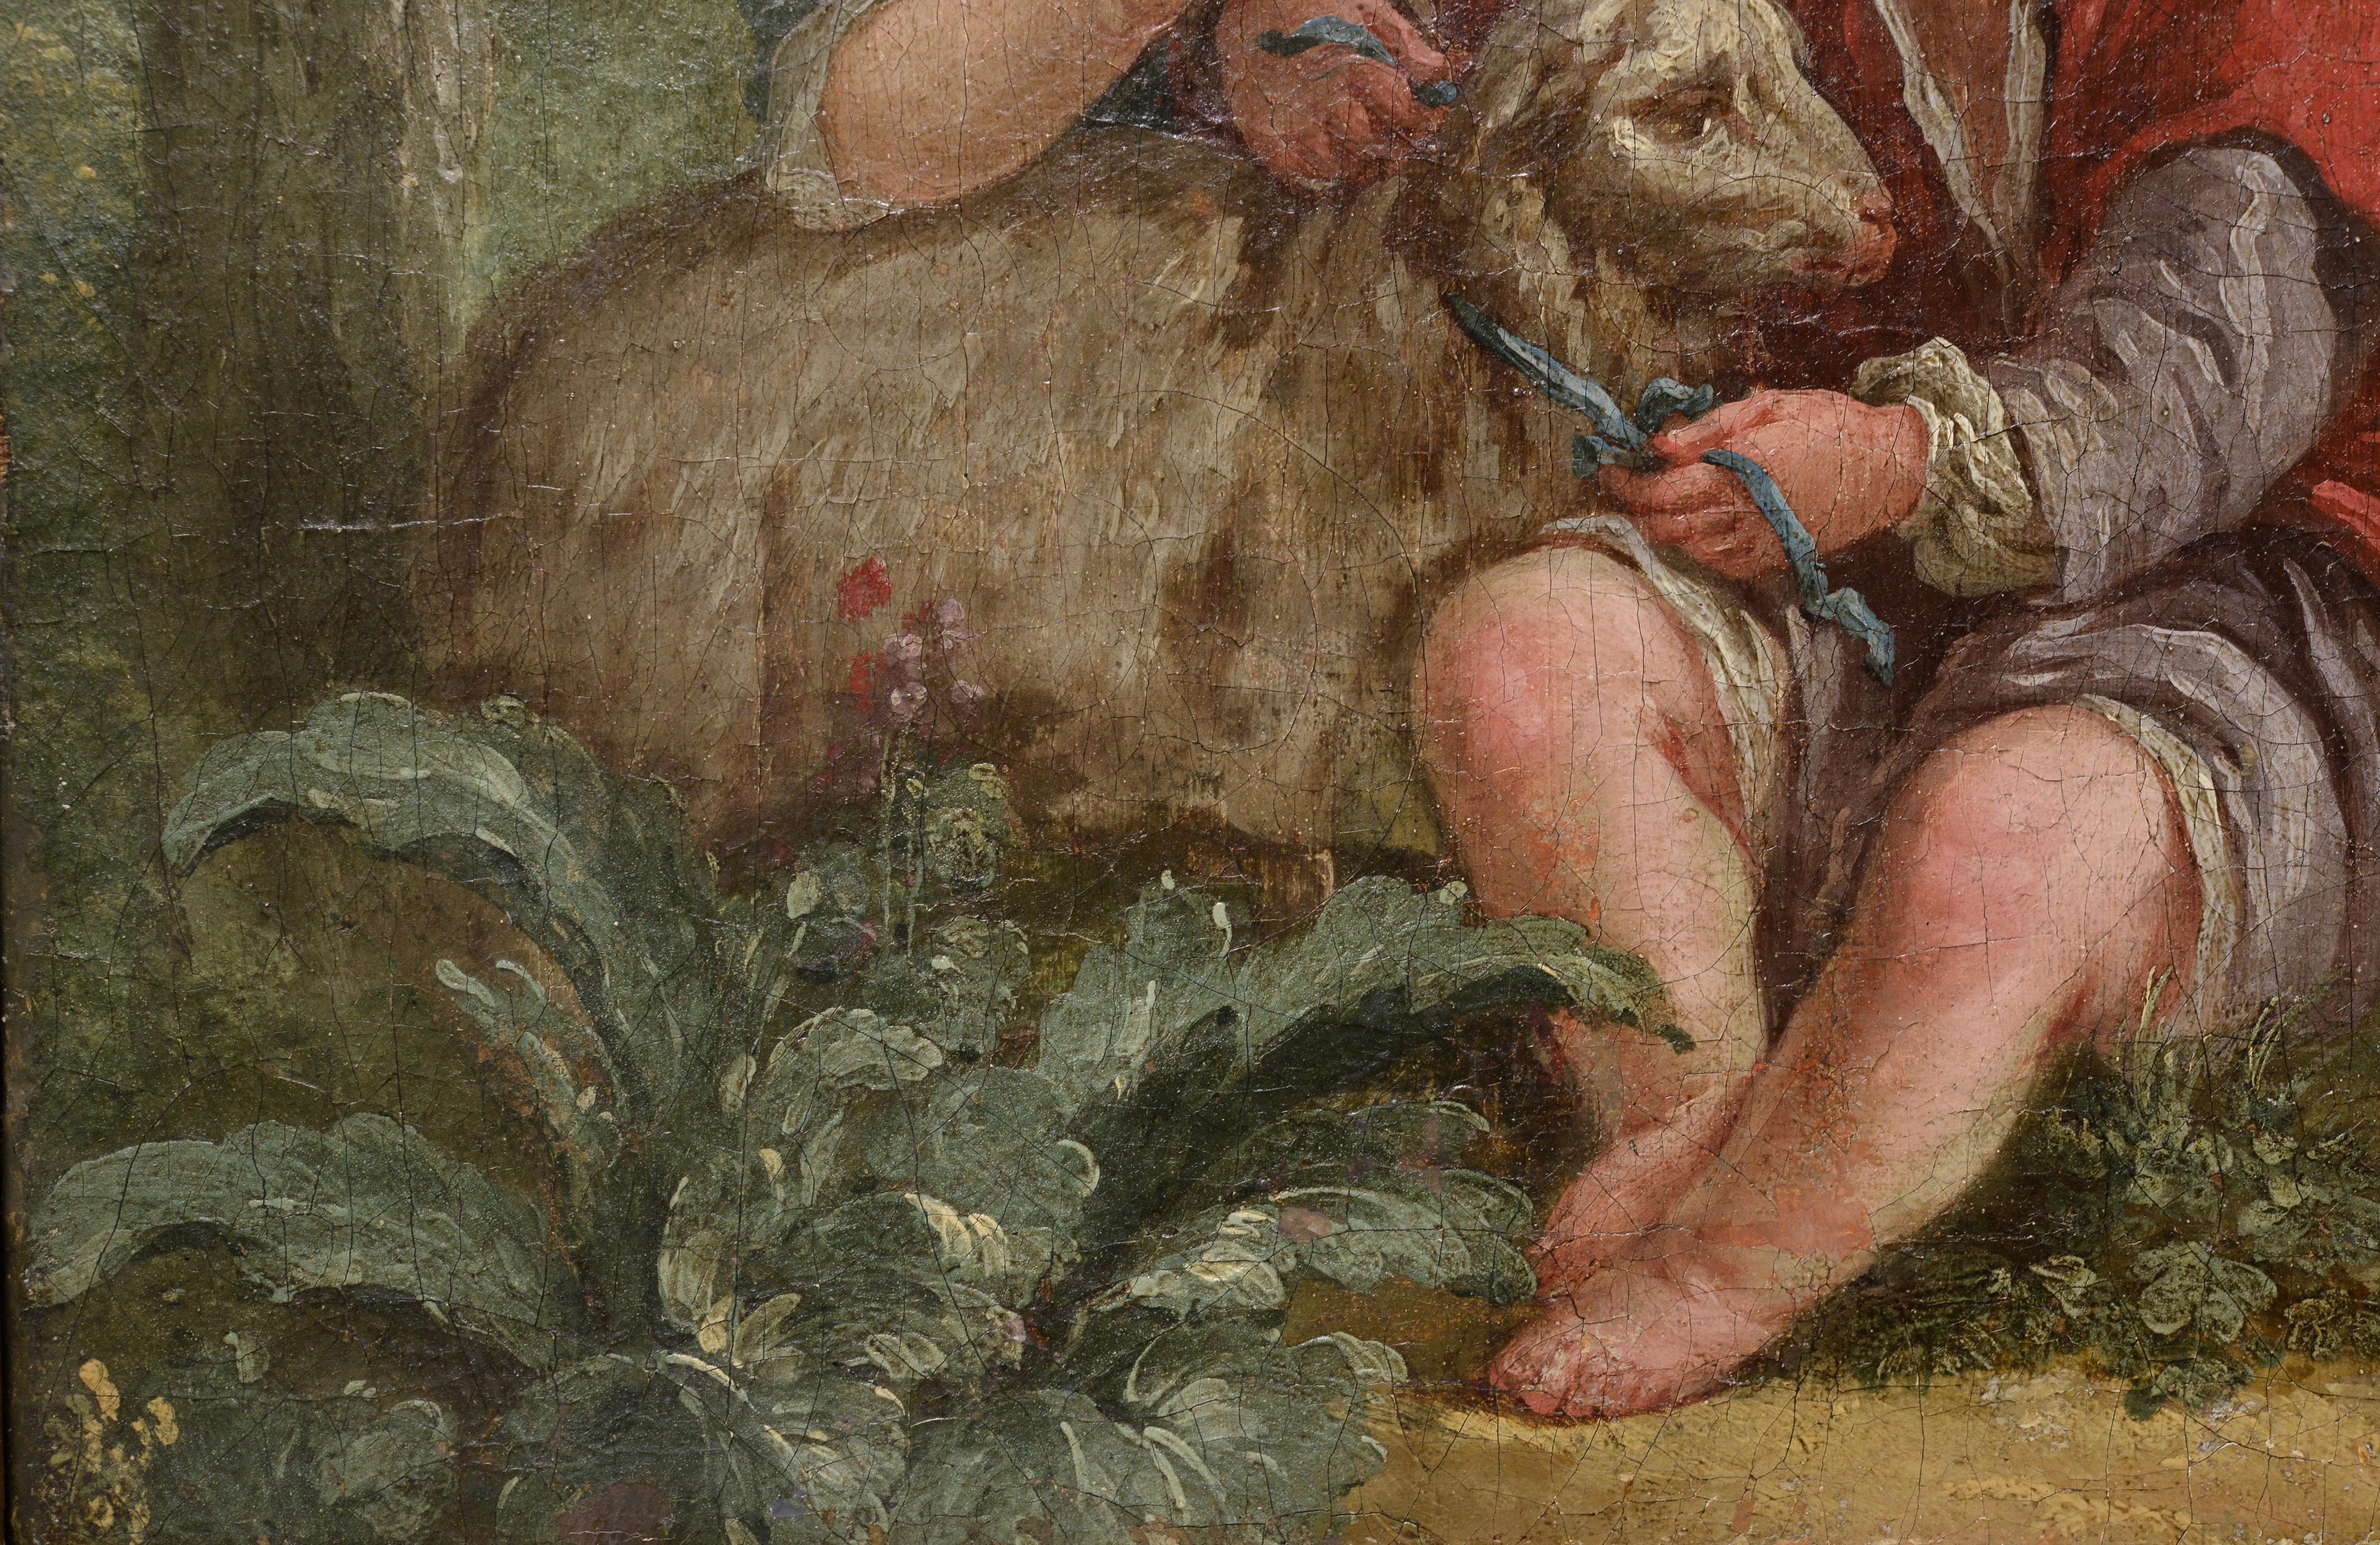 Le tableau a été attribué à Jean-Baptiste Marie Huet (1745 - 1811) par le Cabinet Turquin (France). Une scène mignonne avec des enfants qui nouent un ruban autour du cou d'un jeune agneau. Dans cette œuvre, le rococo s'exprime par un thème léger et